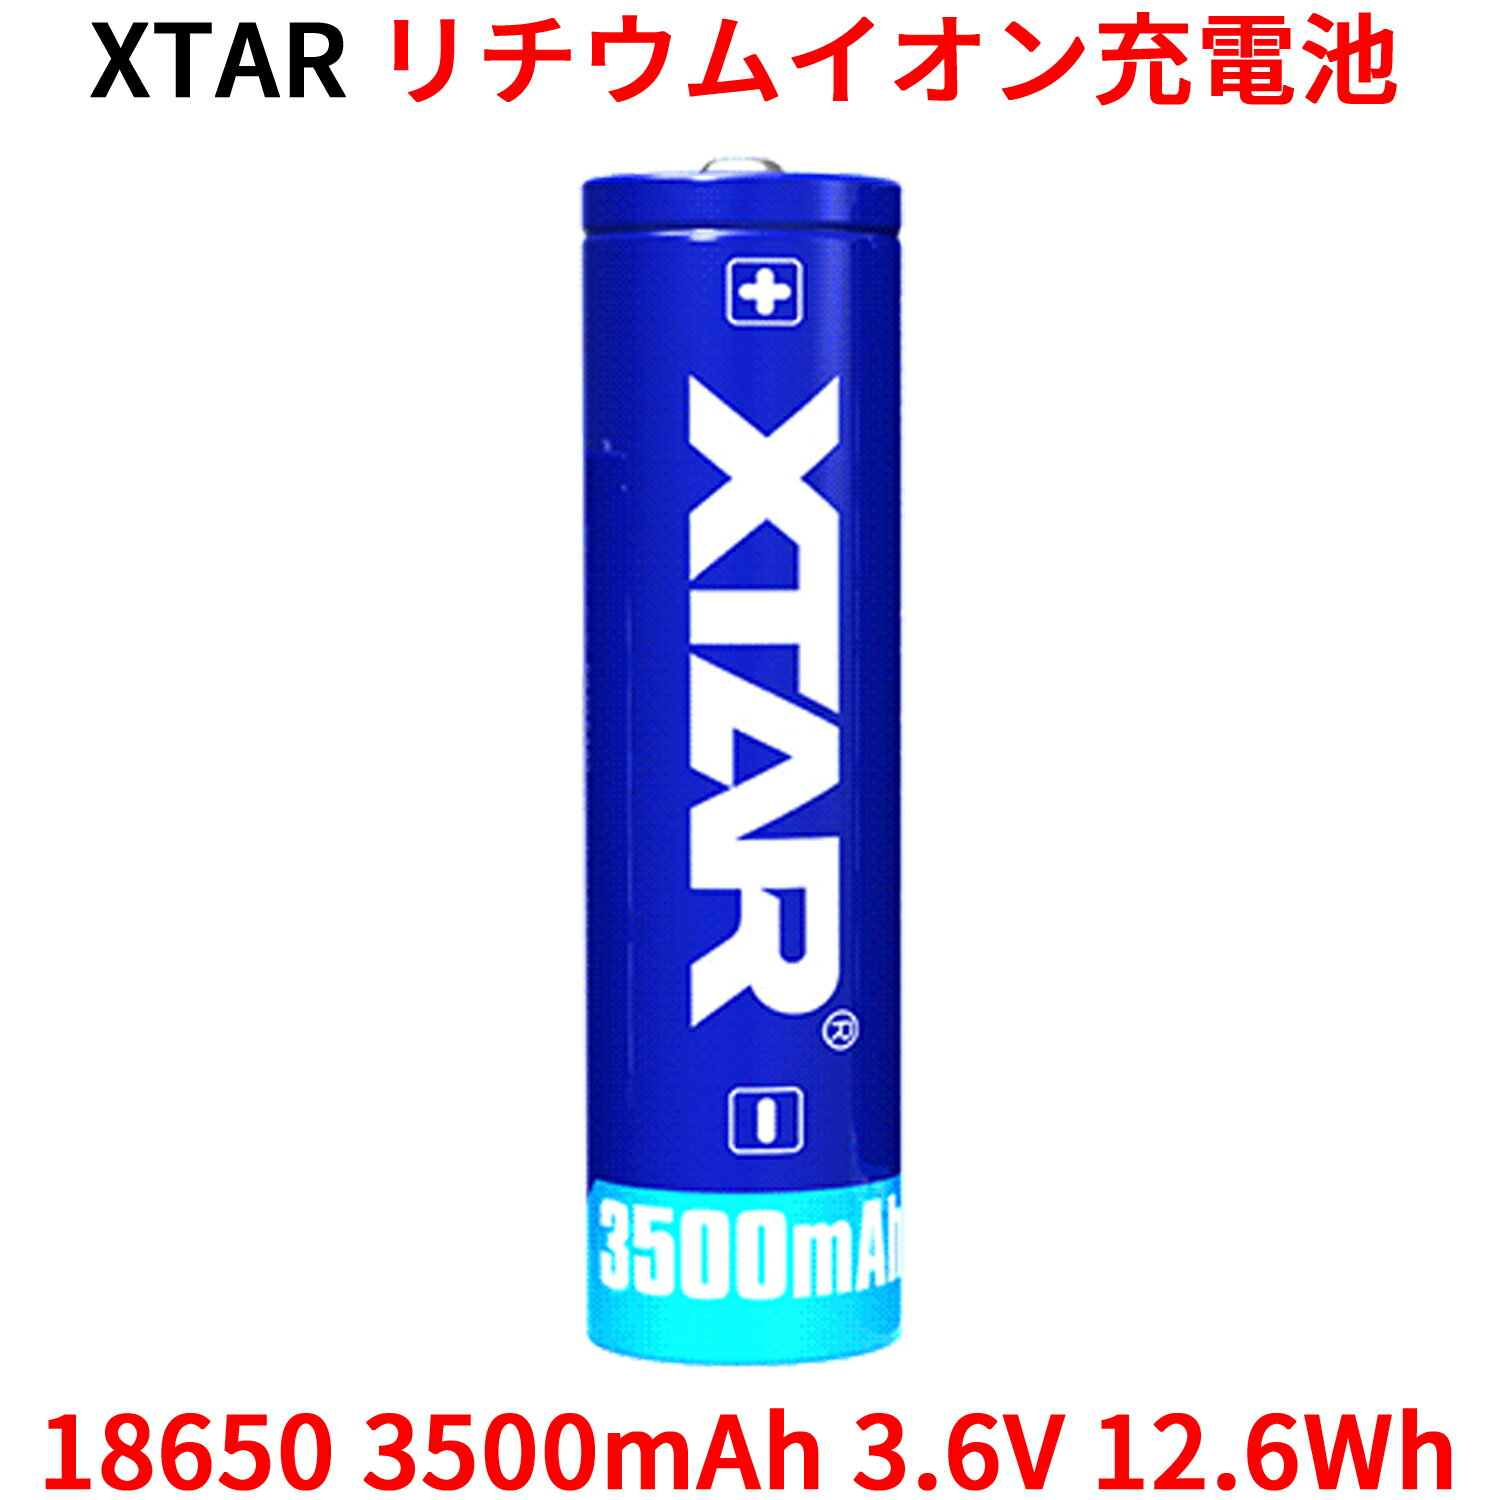 FDK 富士通ニッケル水素充電池高容量タイプ単3(2本入) HR-3UTHC(2B)